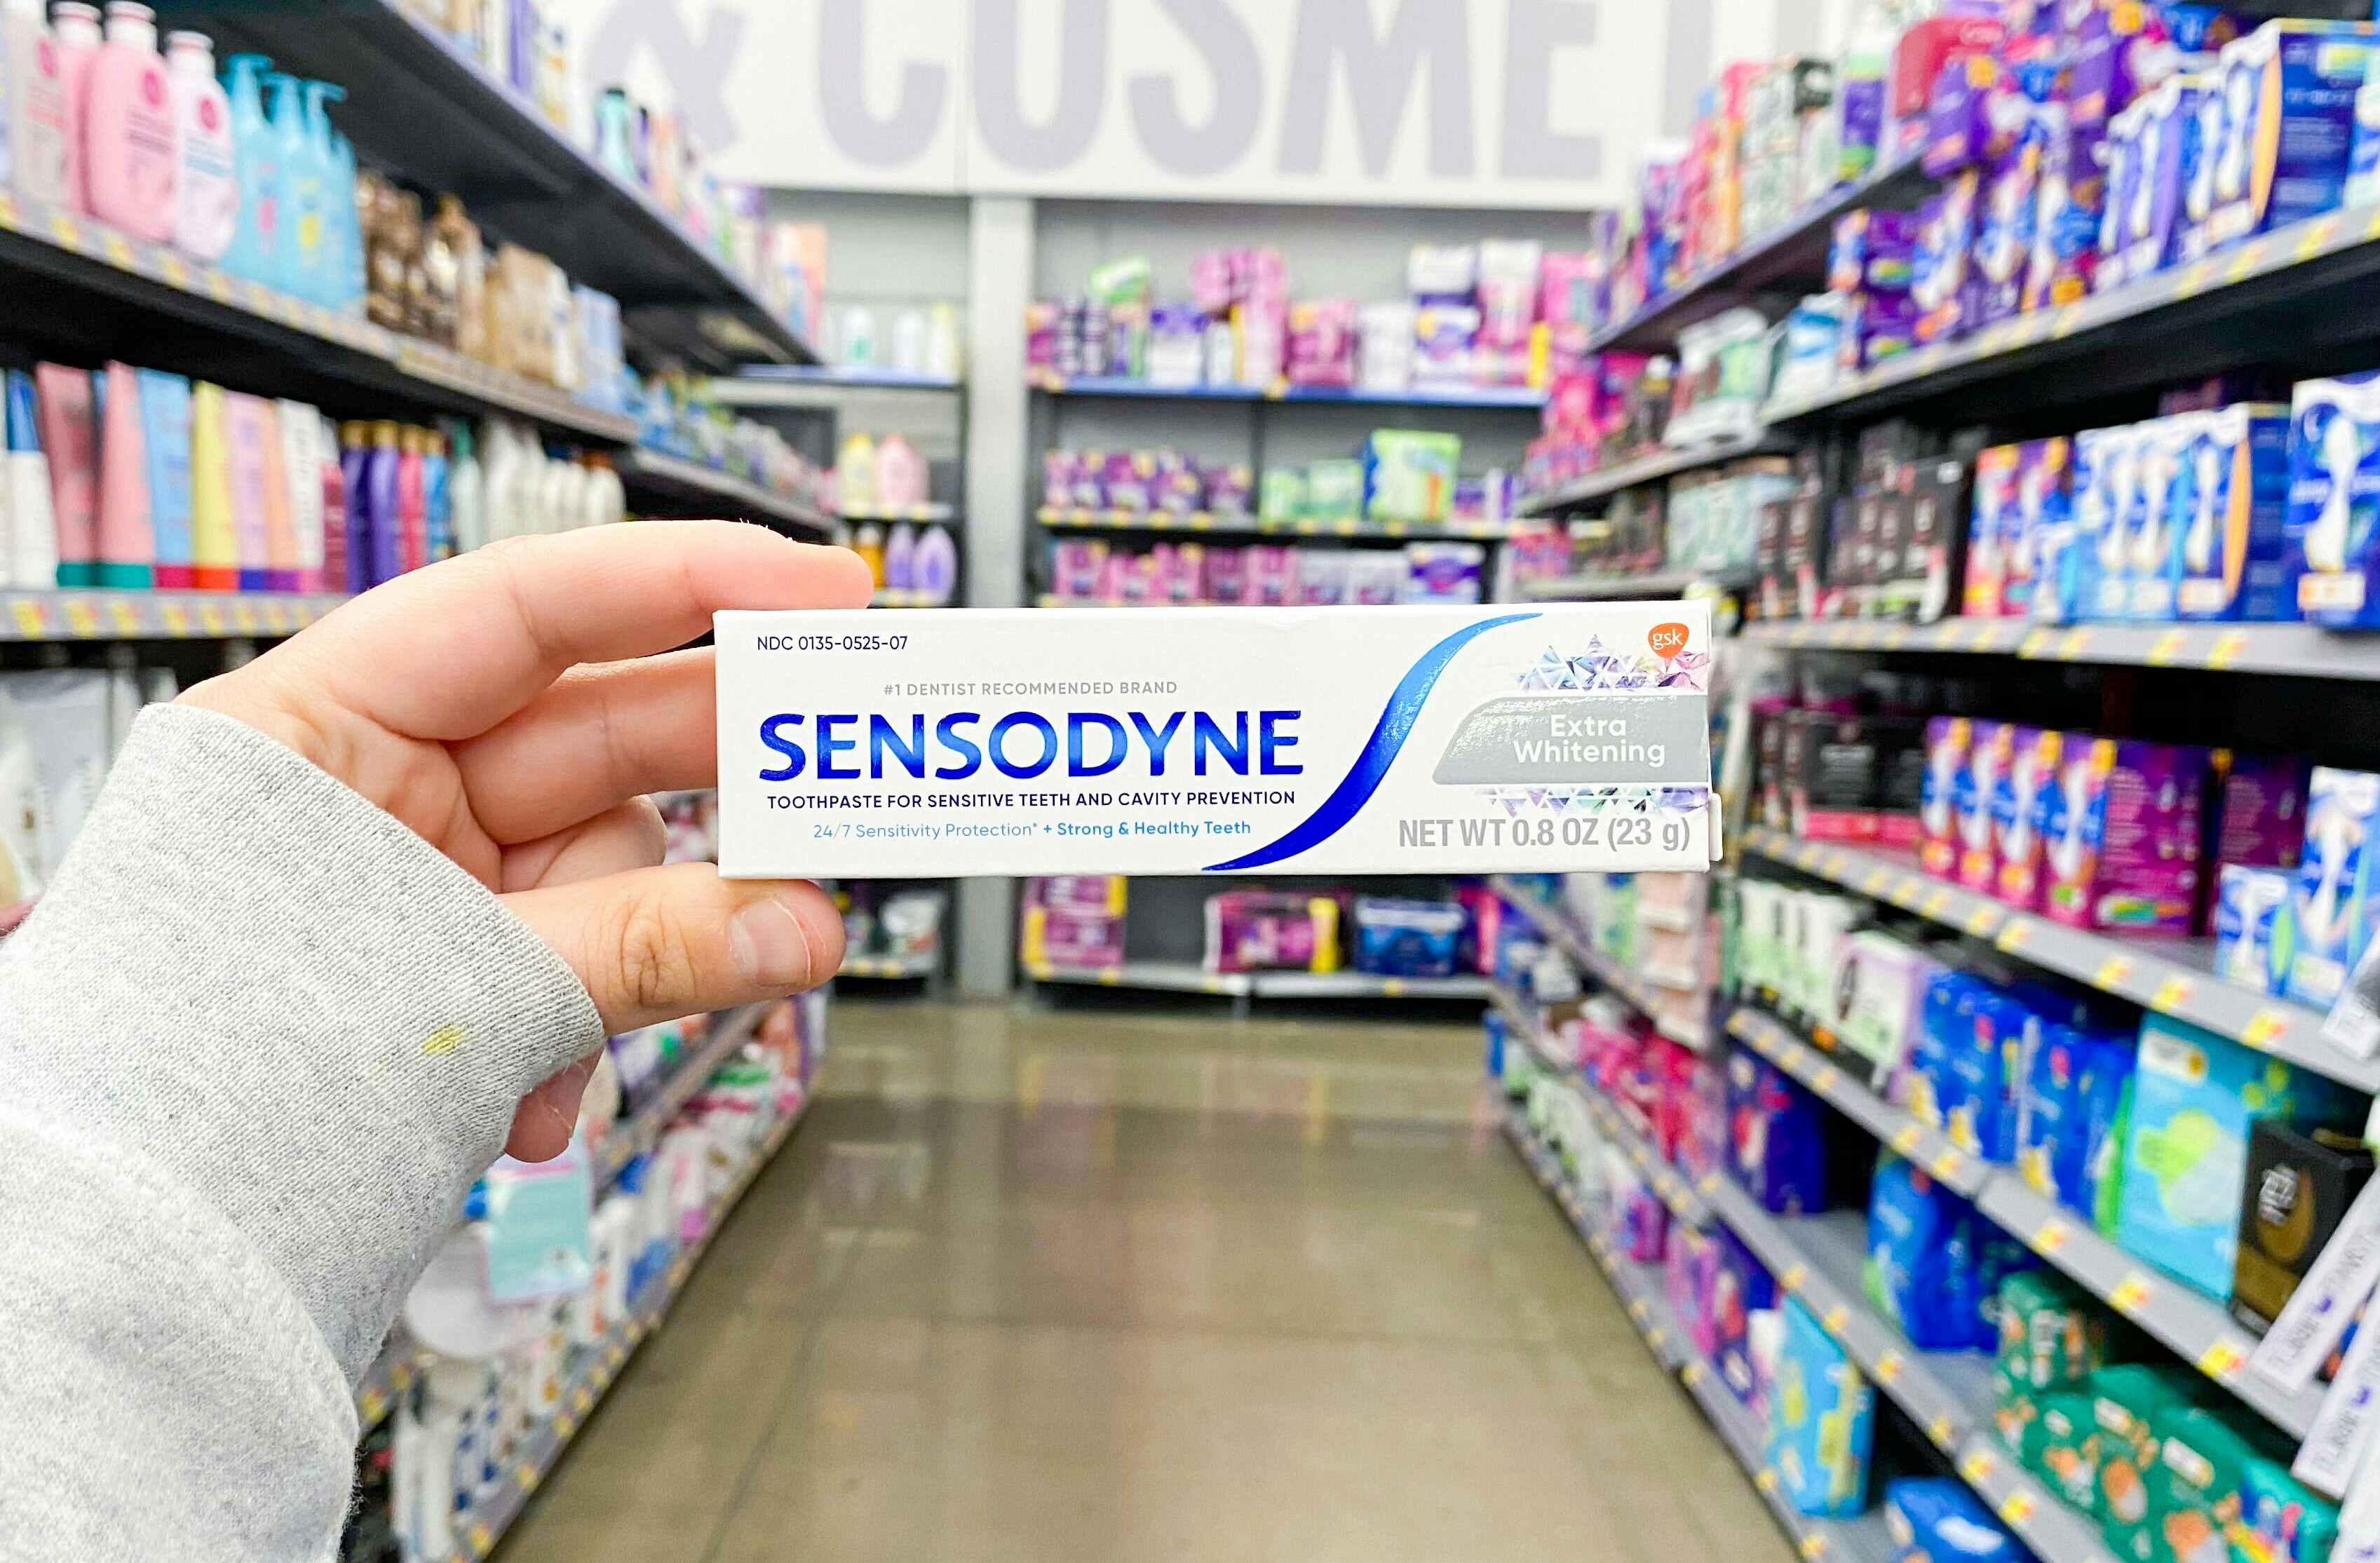 Sensodyne Pronamel Travel-Size Toothpaste, as Low as $1.48 on Amazon